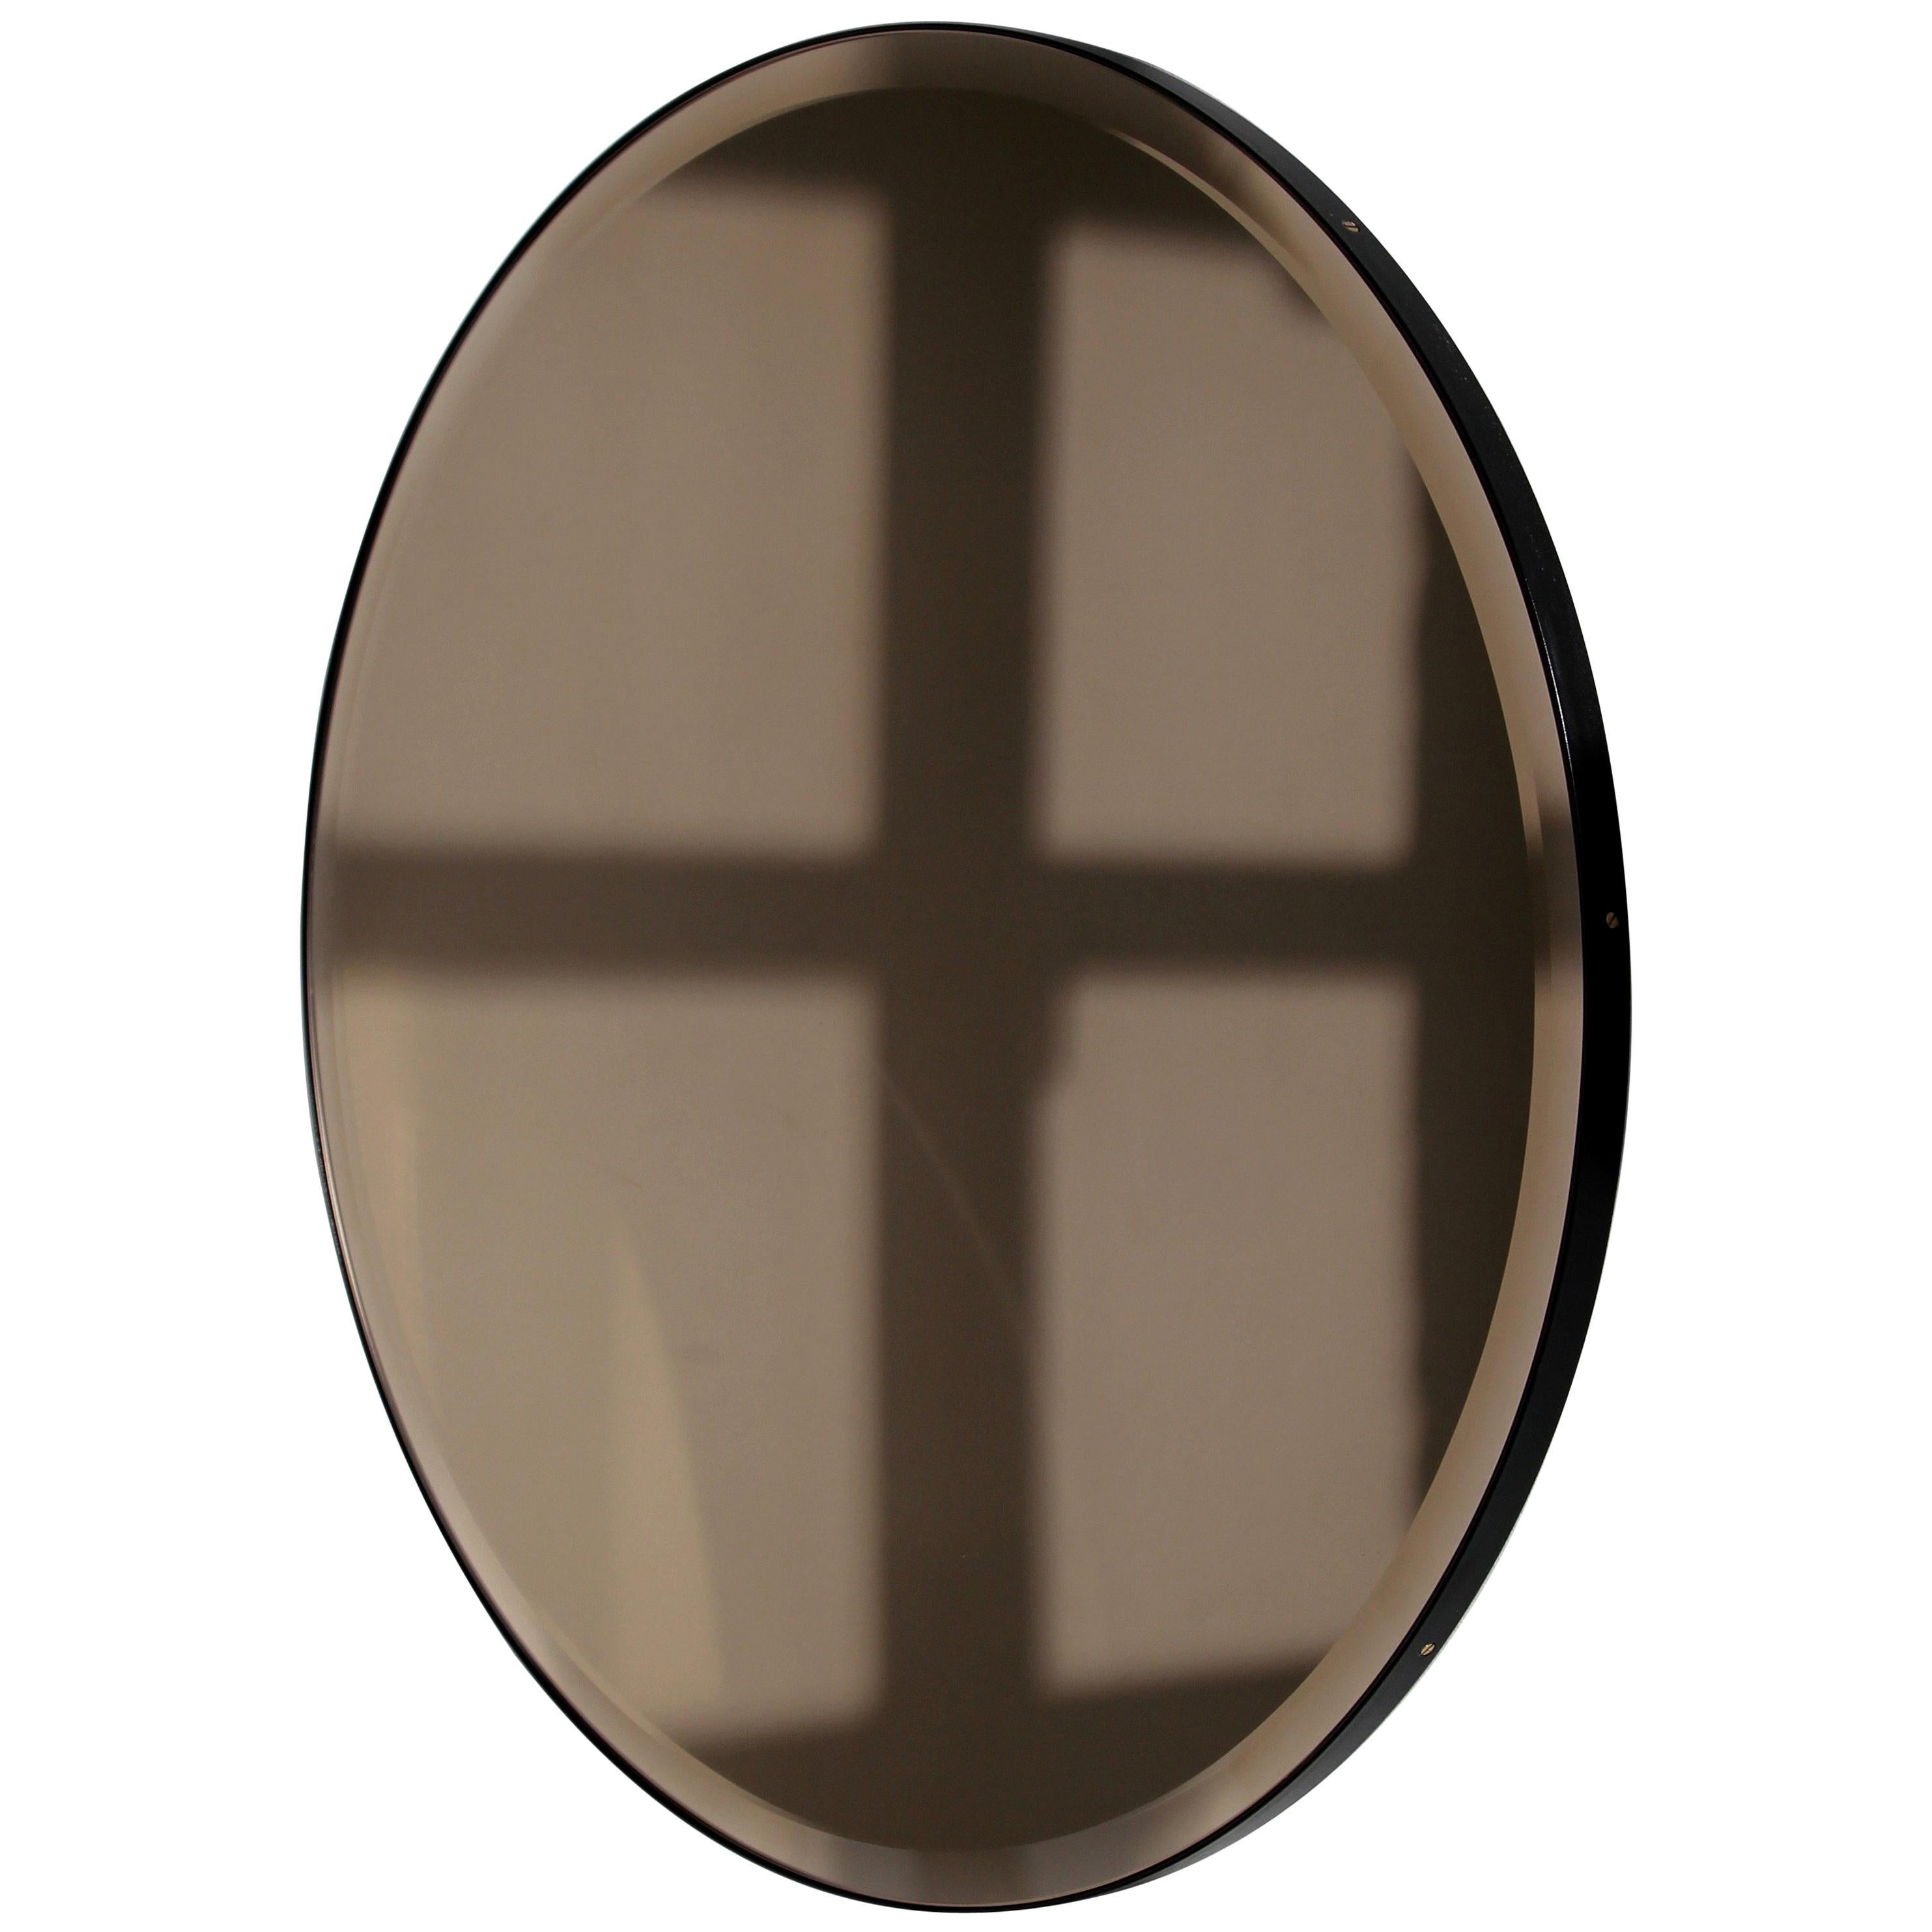 Orbis Bronze getönter, runder, abgeschrägter Art Deco Mirror mit schwarzem Rahmen, klein